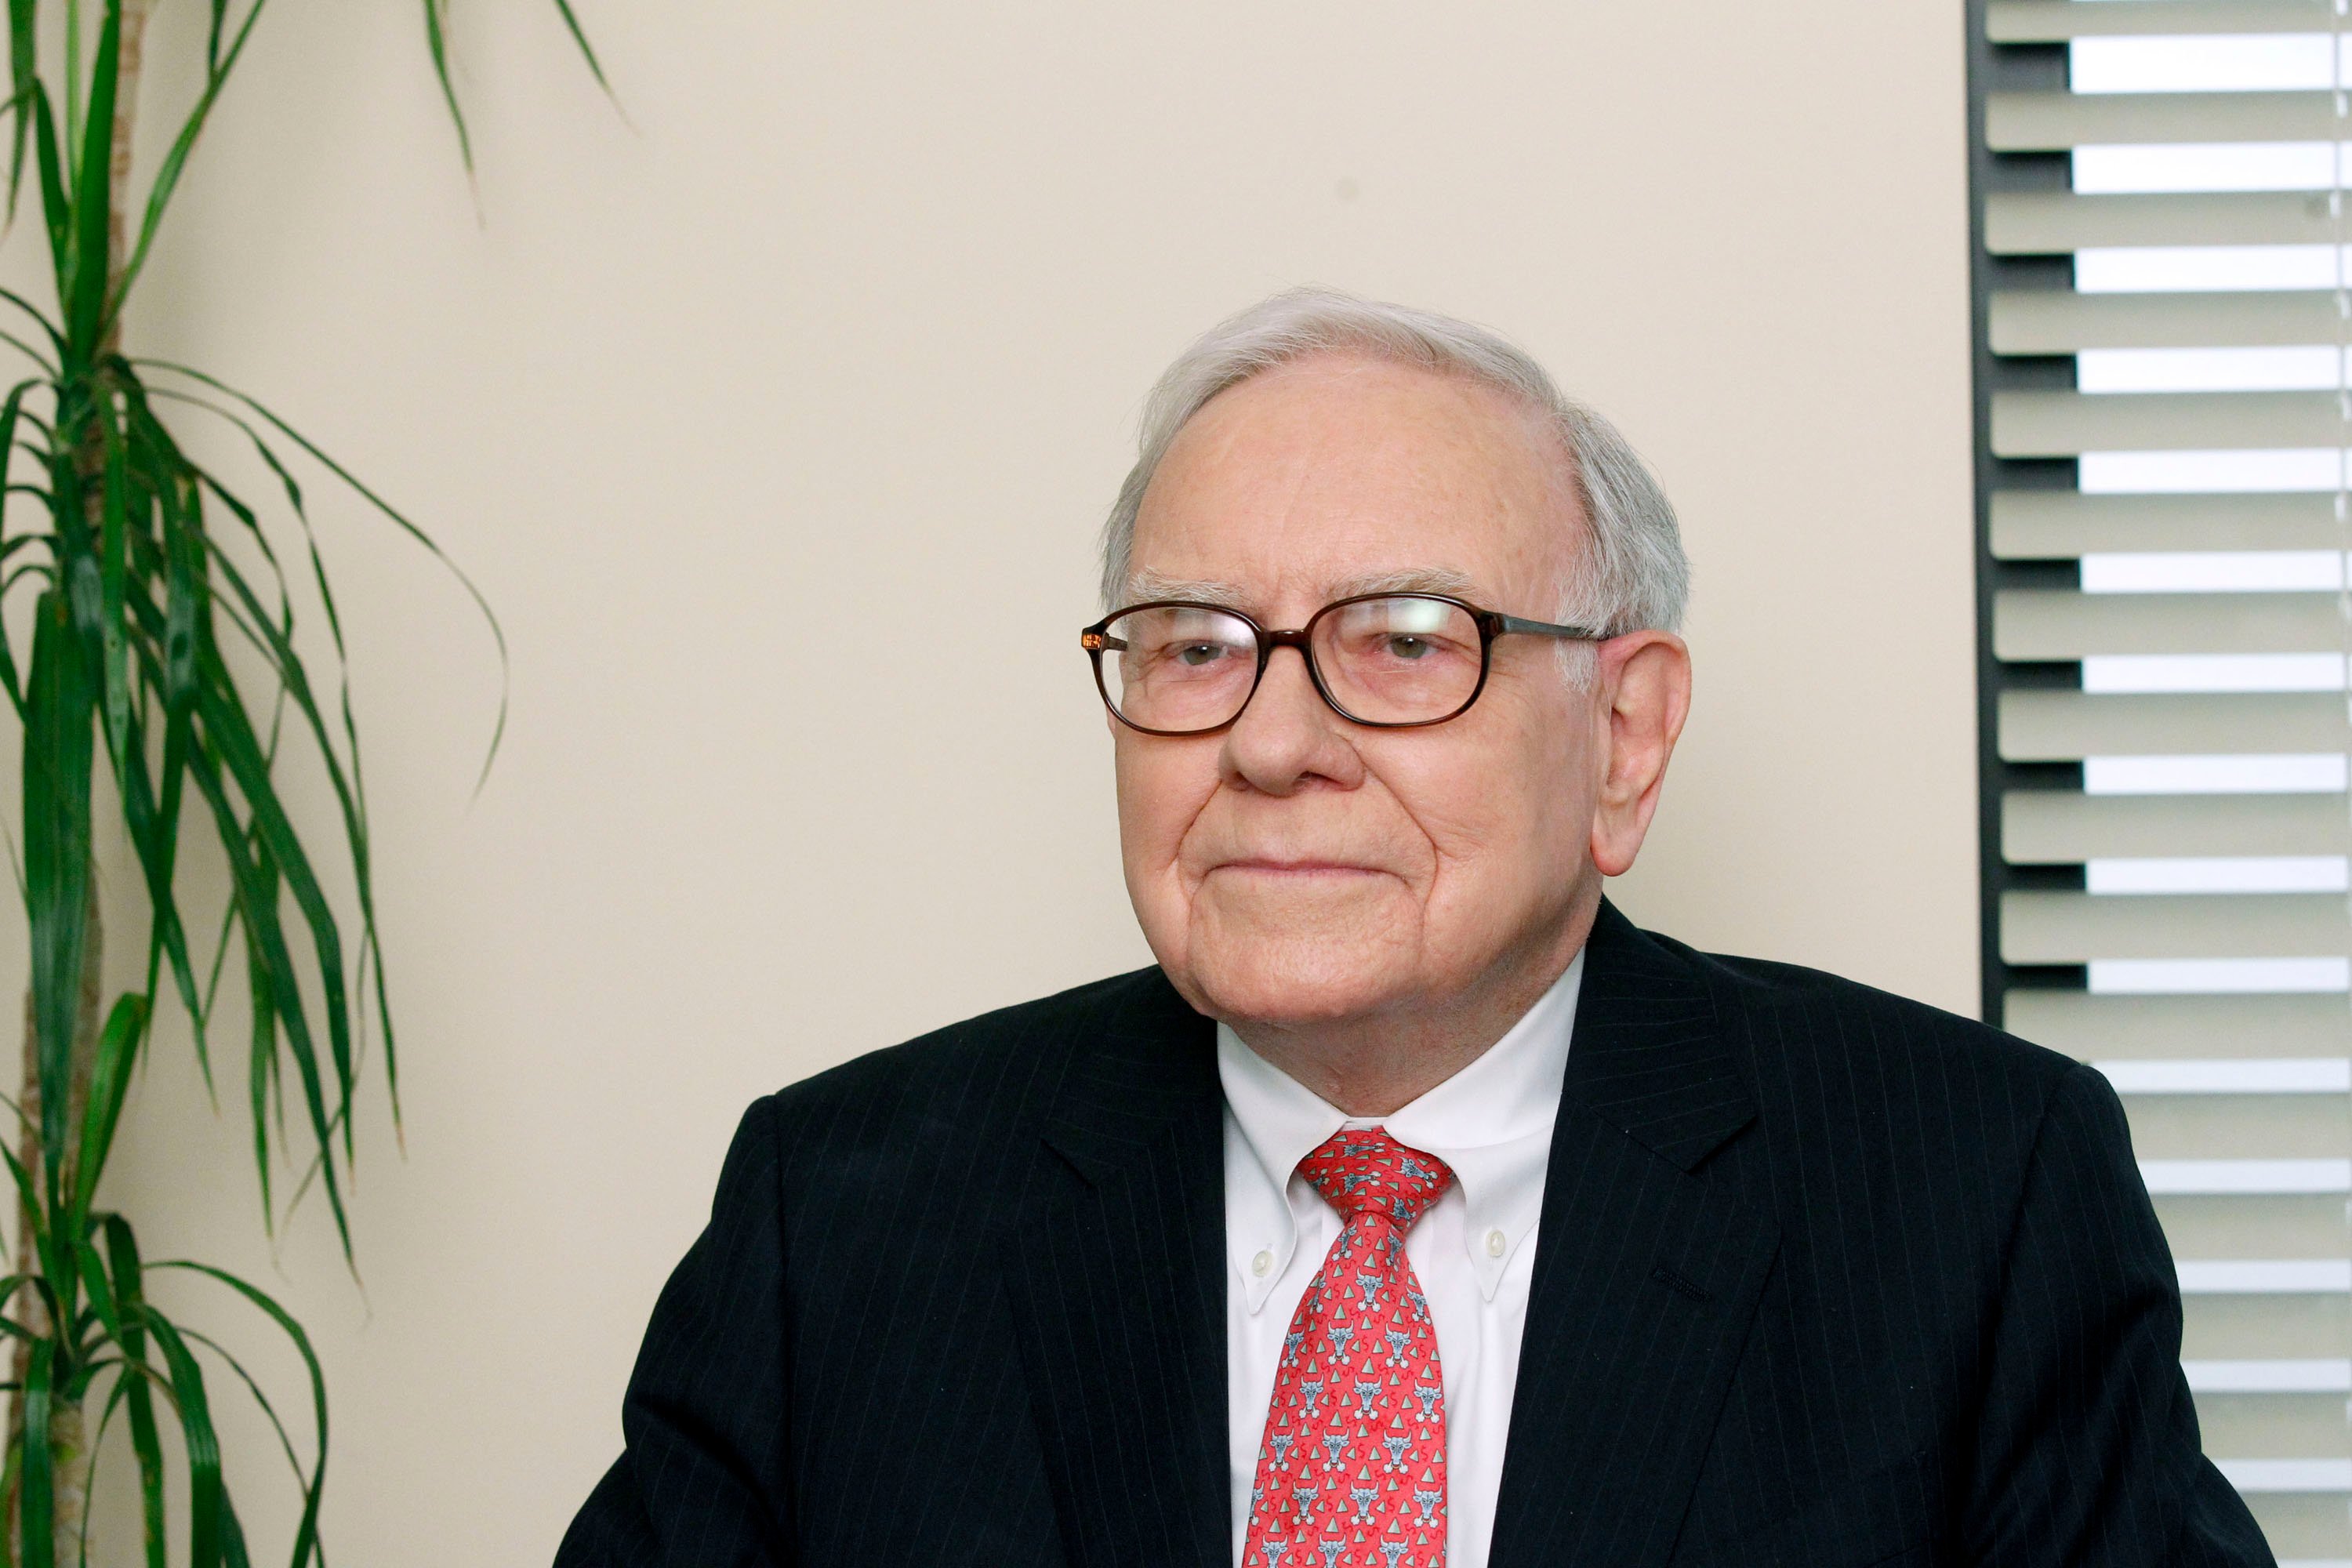 Warren Buffett on 'The Office' 